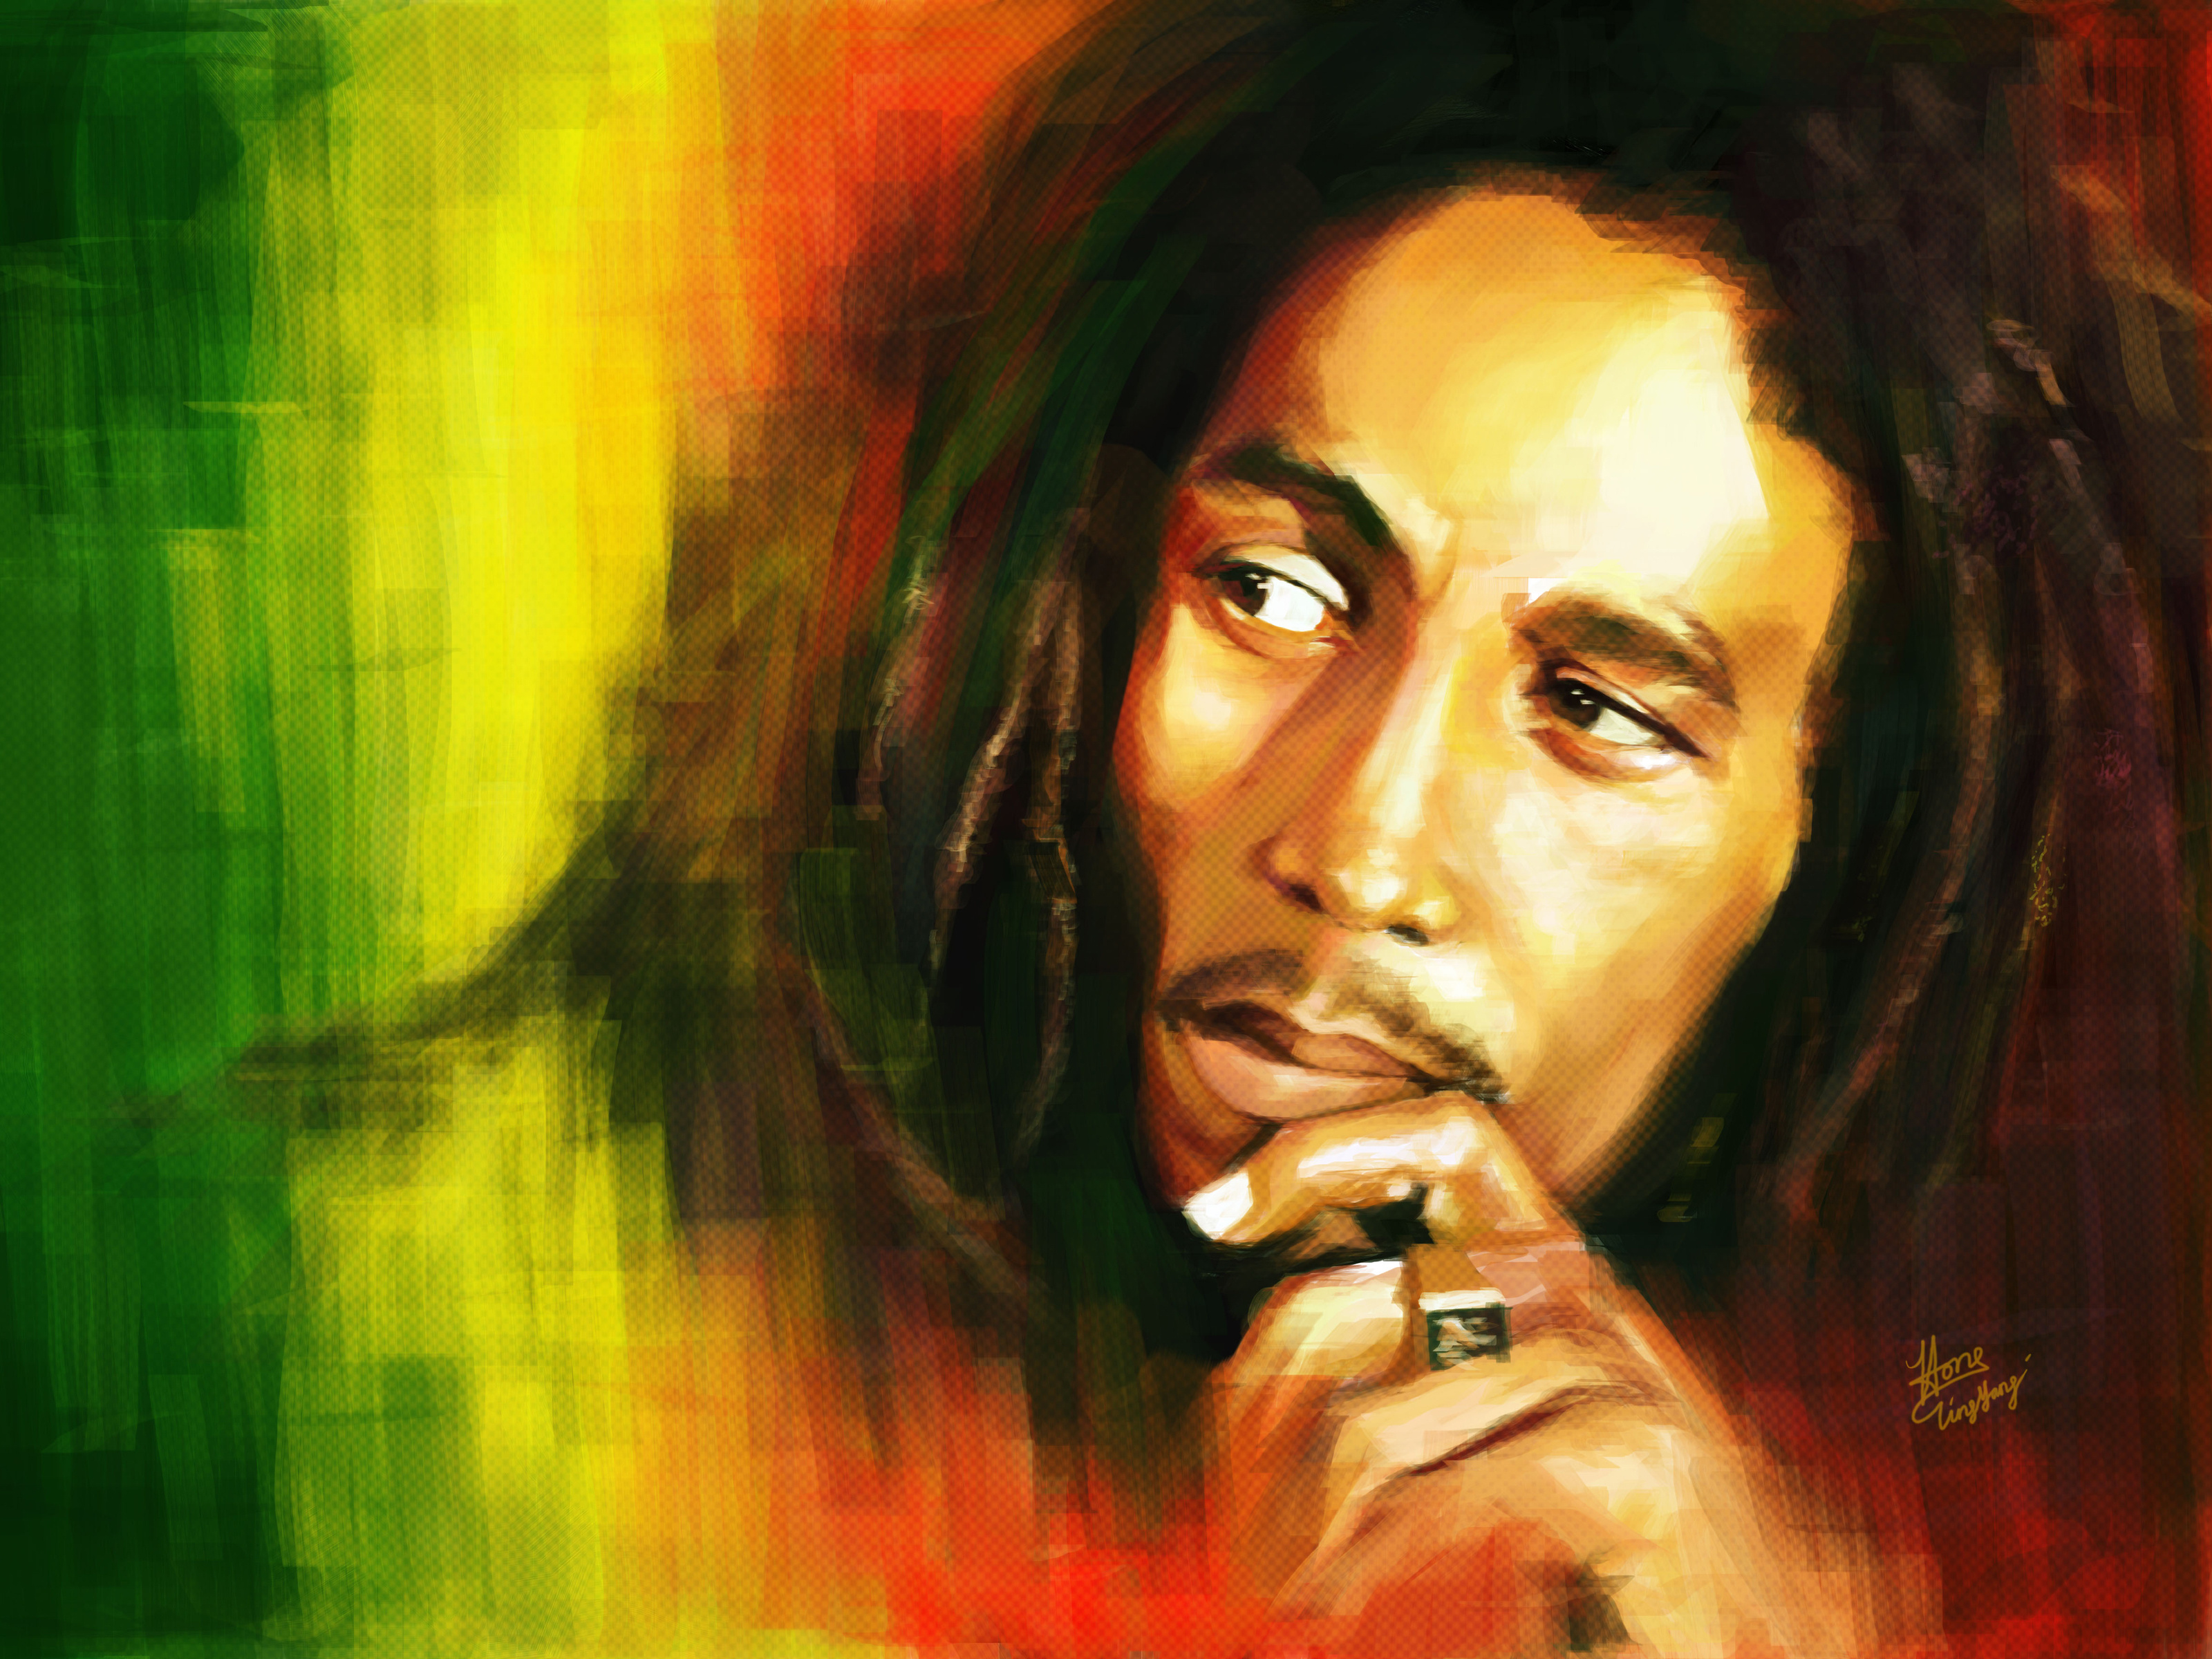 Bob Marley music - reggae and ska desktop wallpaper.